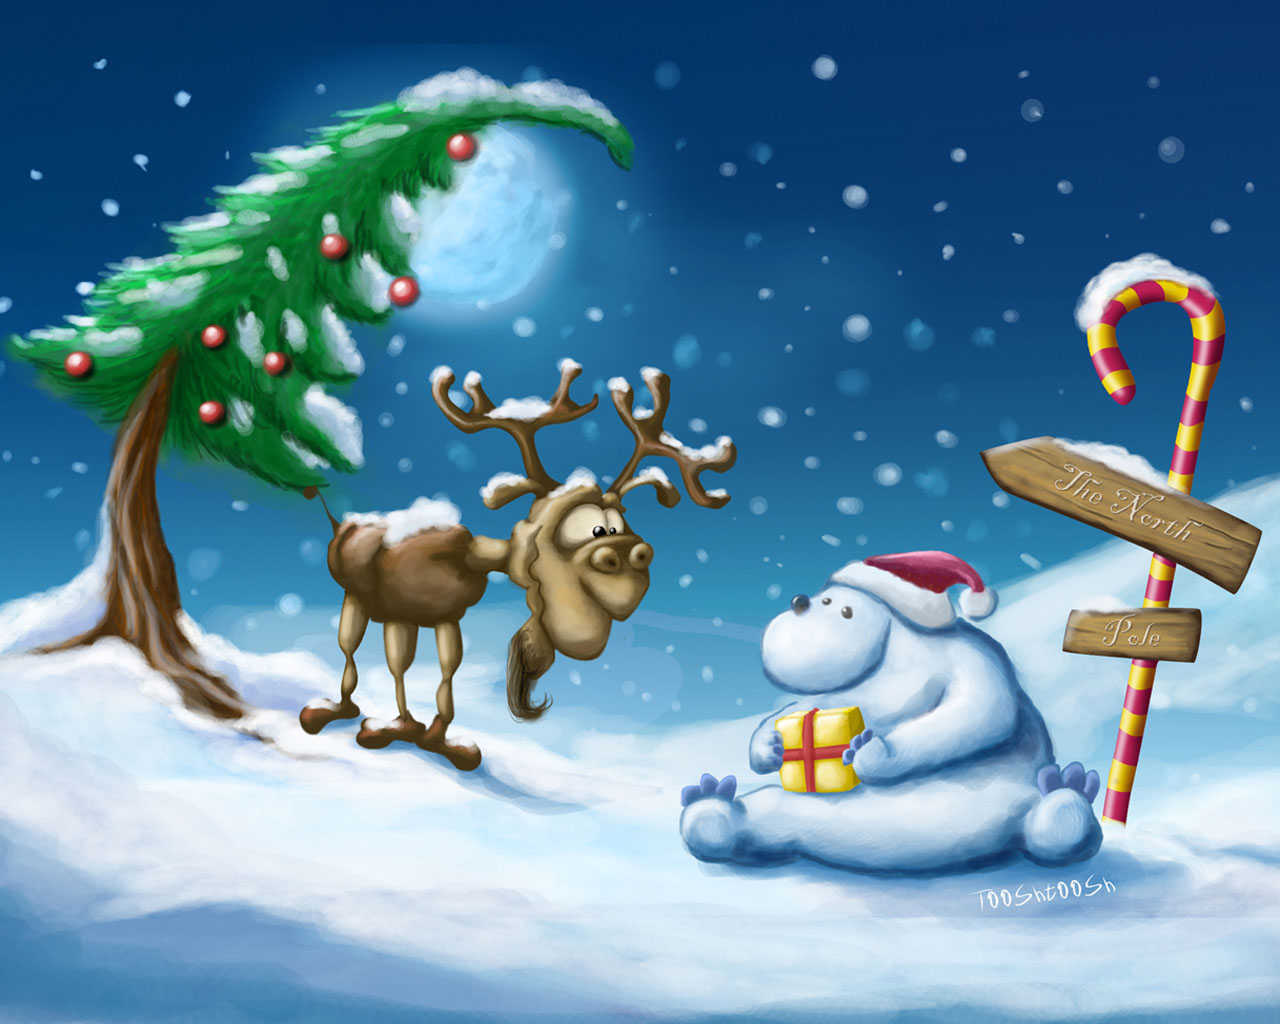 Reindeer Snowman Wallpaper Stock Photos